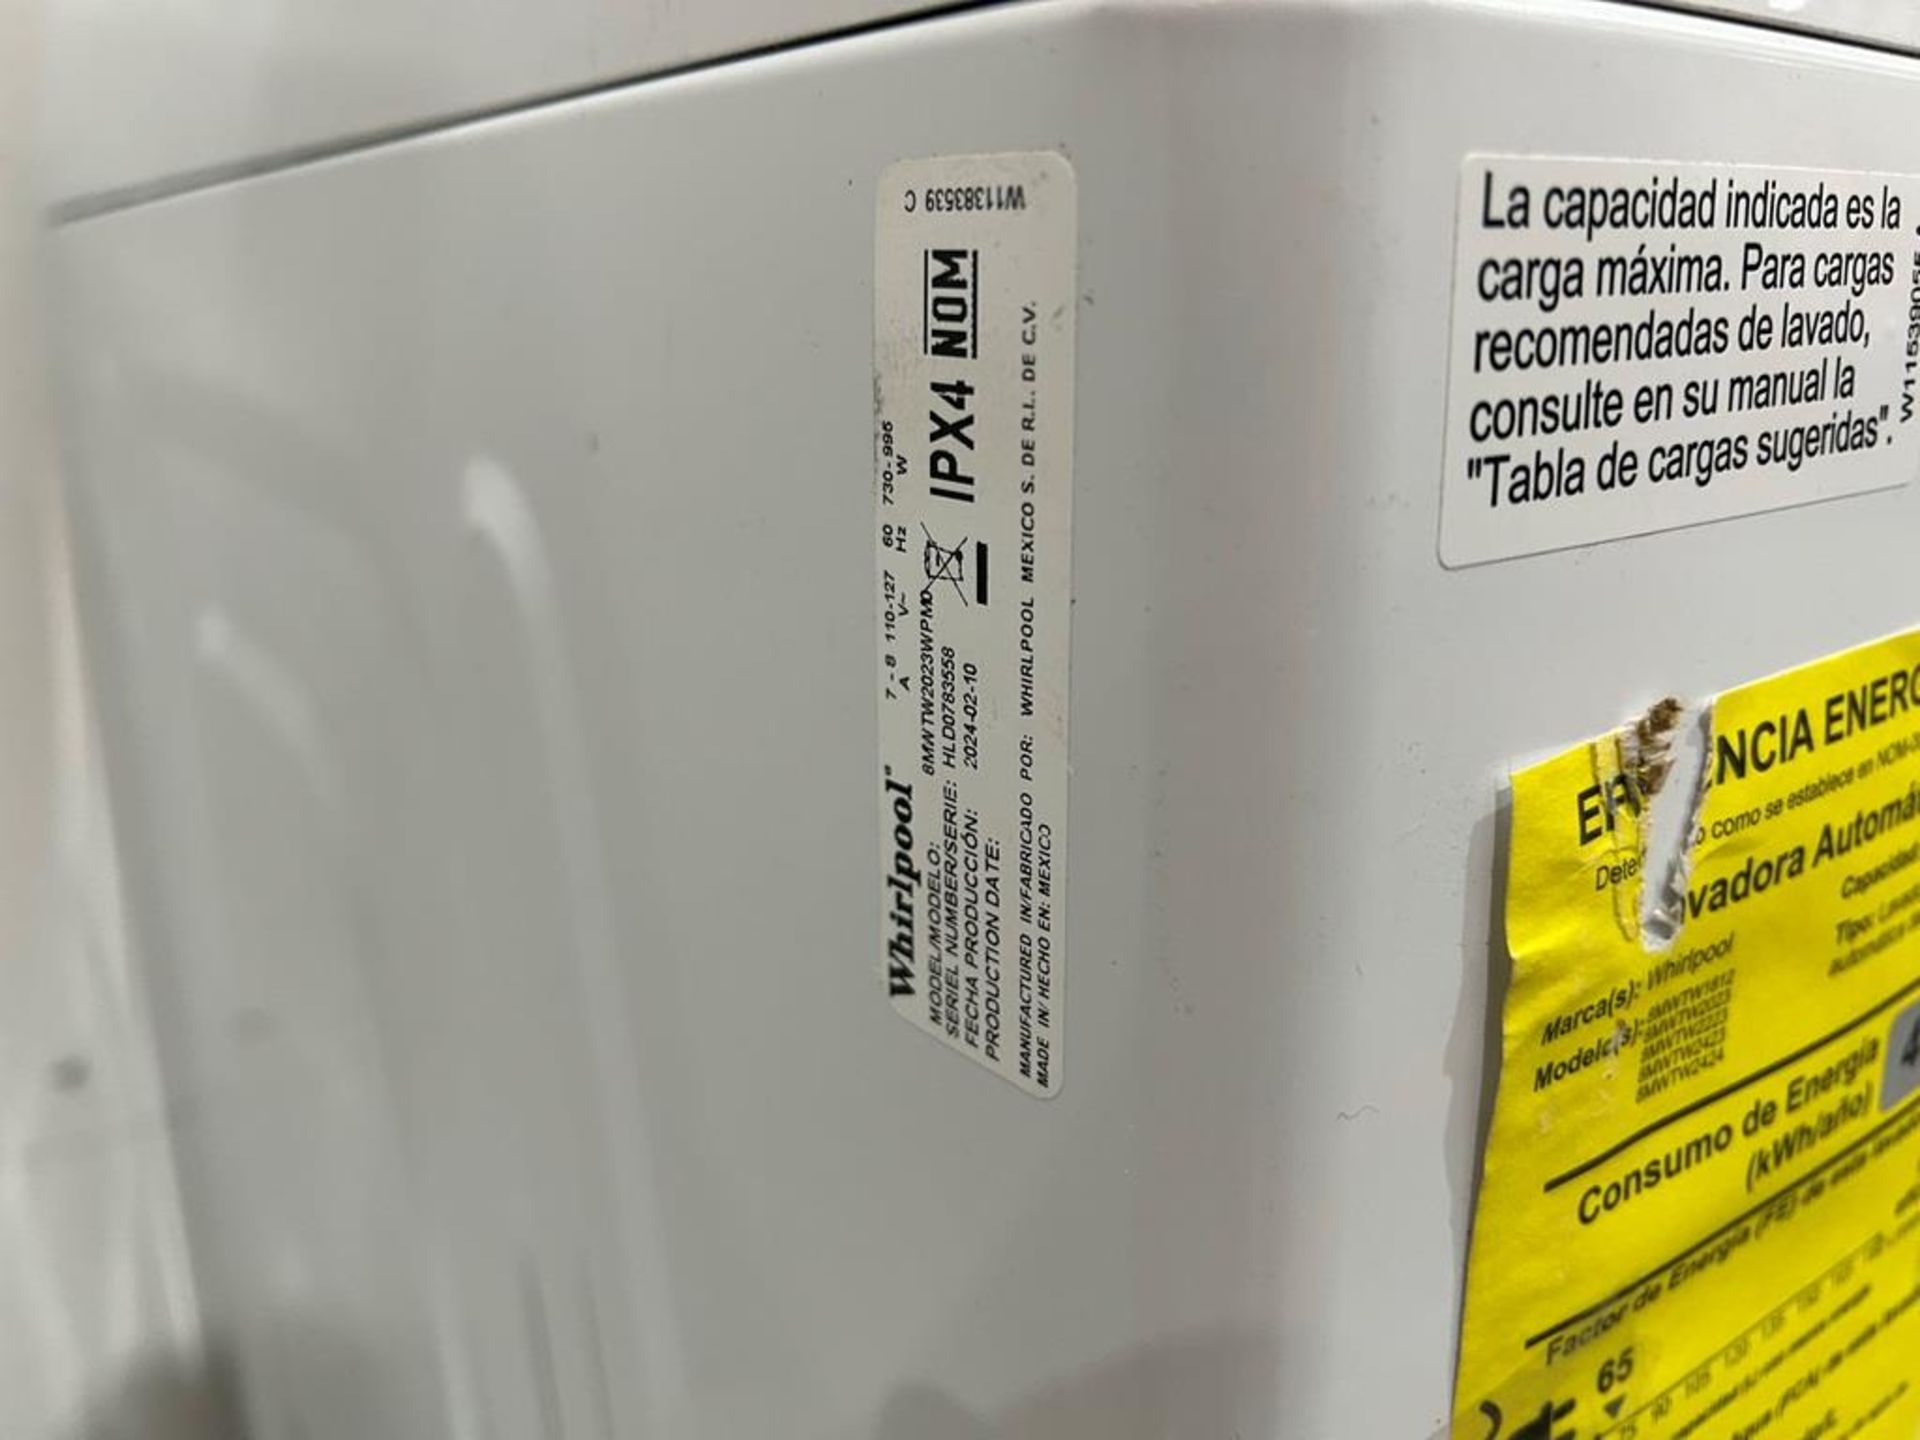 Lote de 2 lavadoras contiene: 1 Lavadora de 22 KG Marca MABE, Modelo LMA72215WDAB00, Serie S23162, - Image 6 of 10